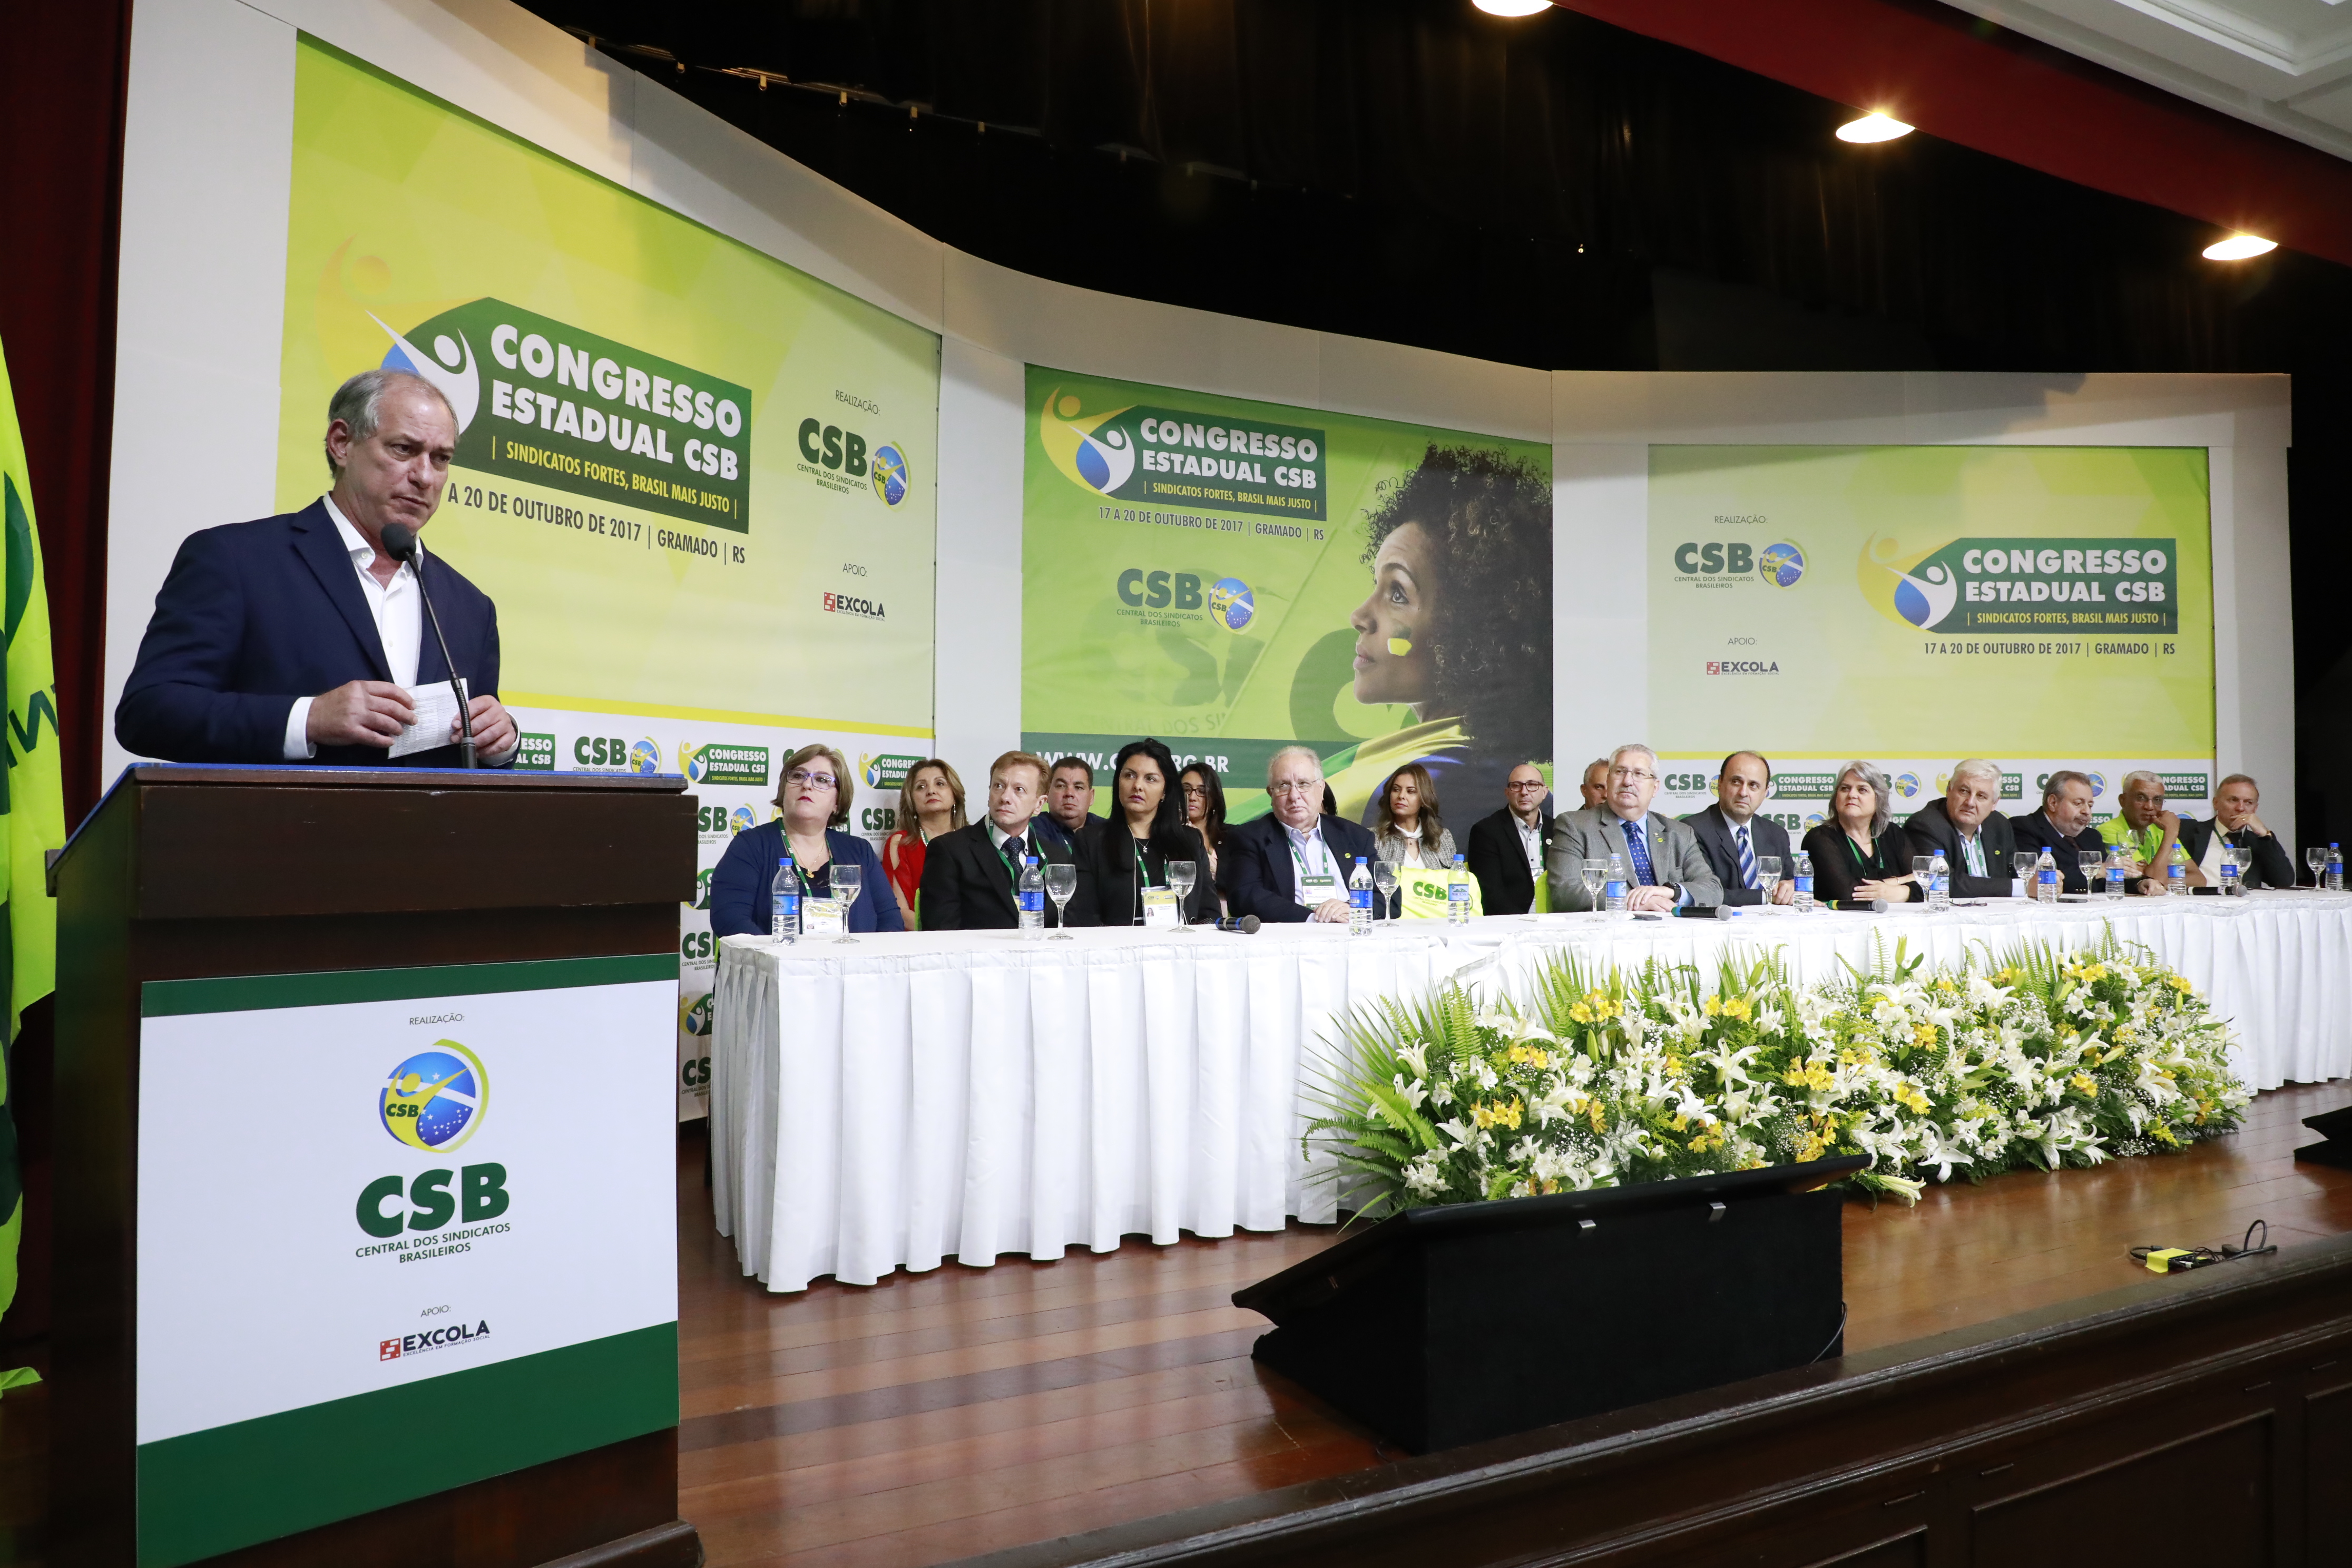 Cerimônia de abertura do Congresso Estadual em Gramado (RS) – 17 a 20 outubro | 2017